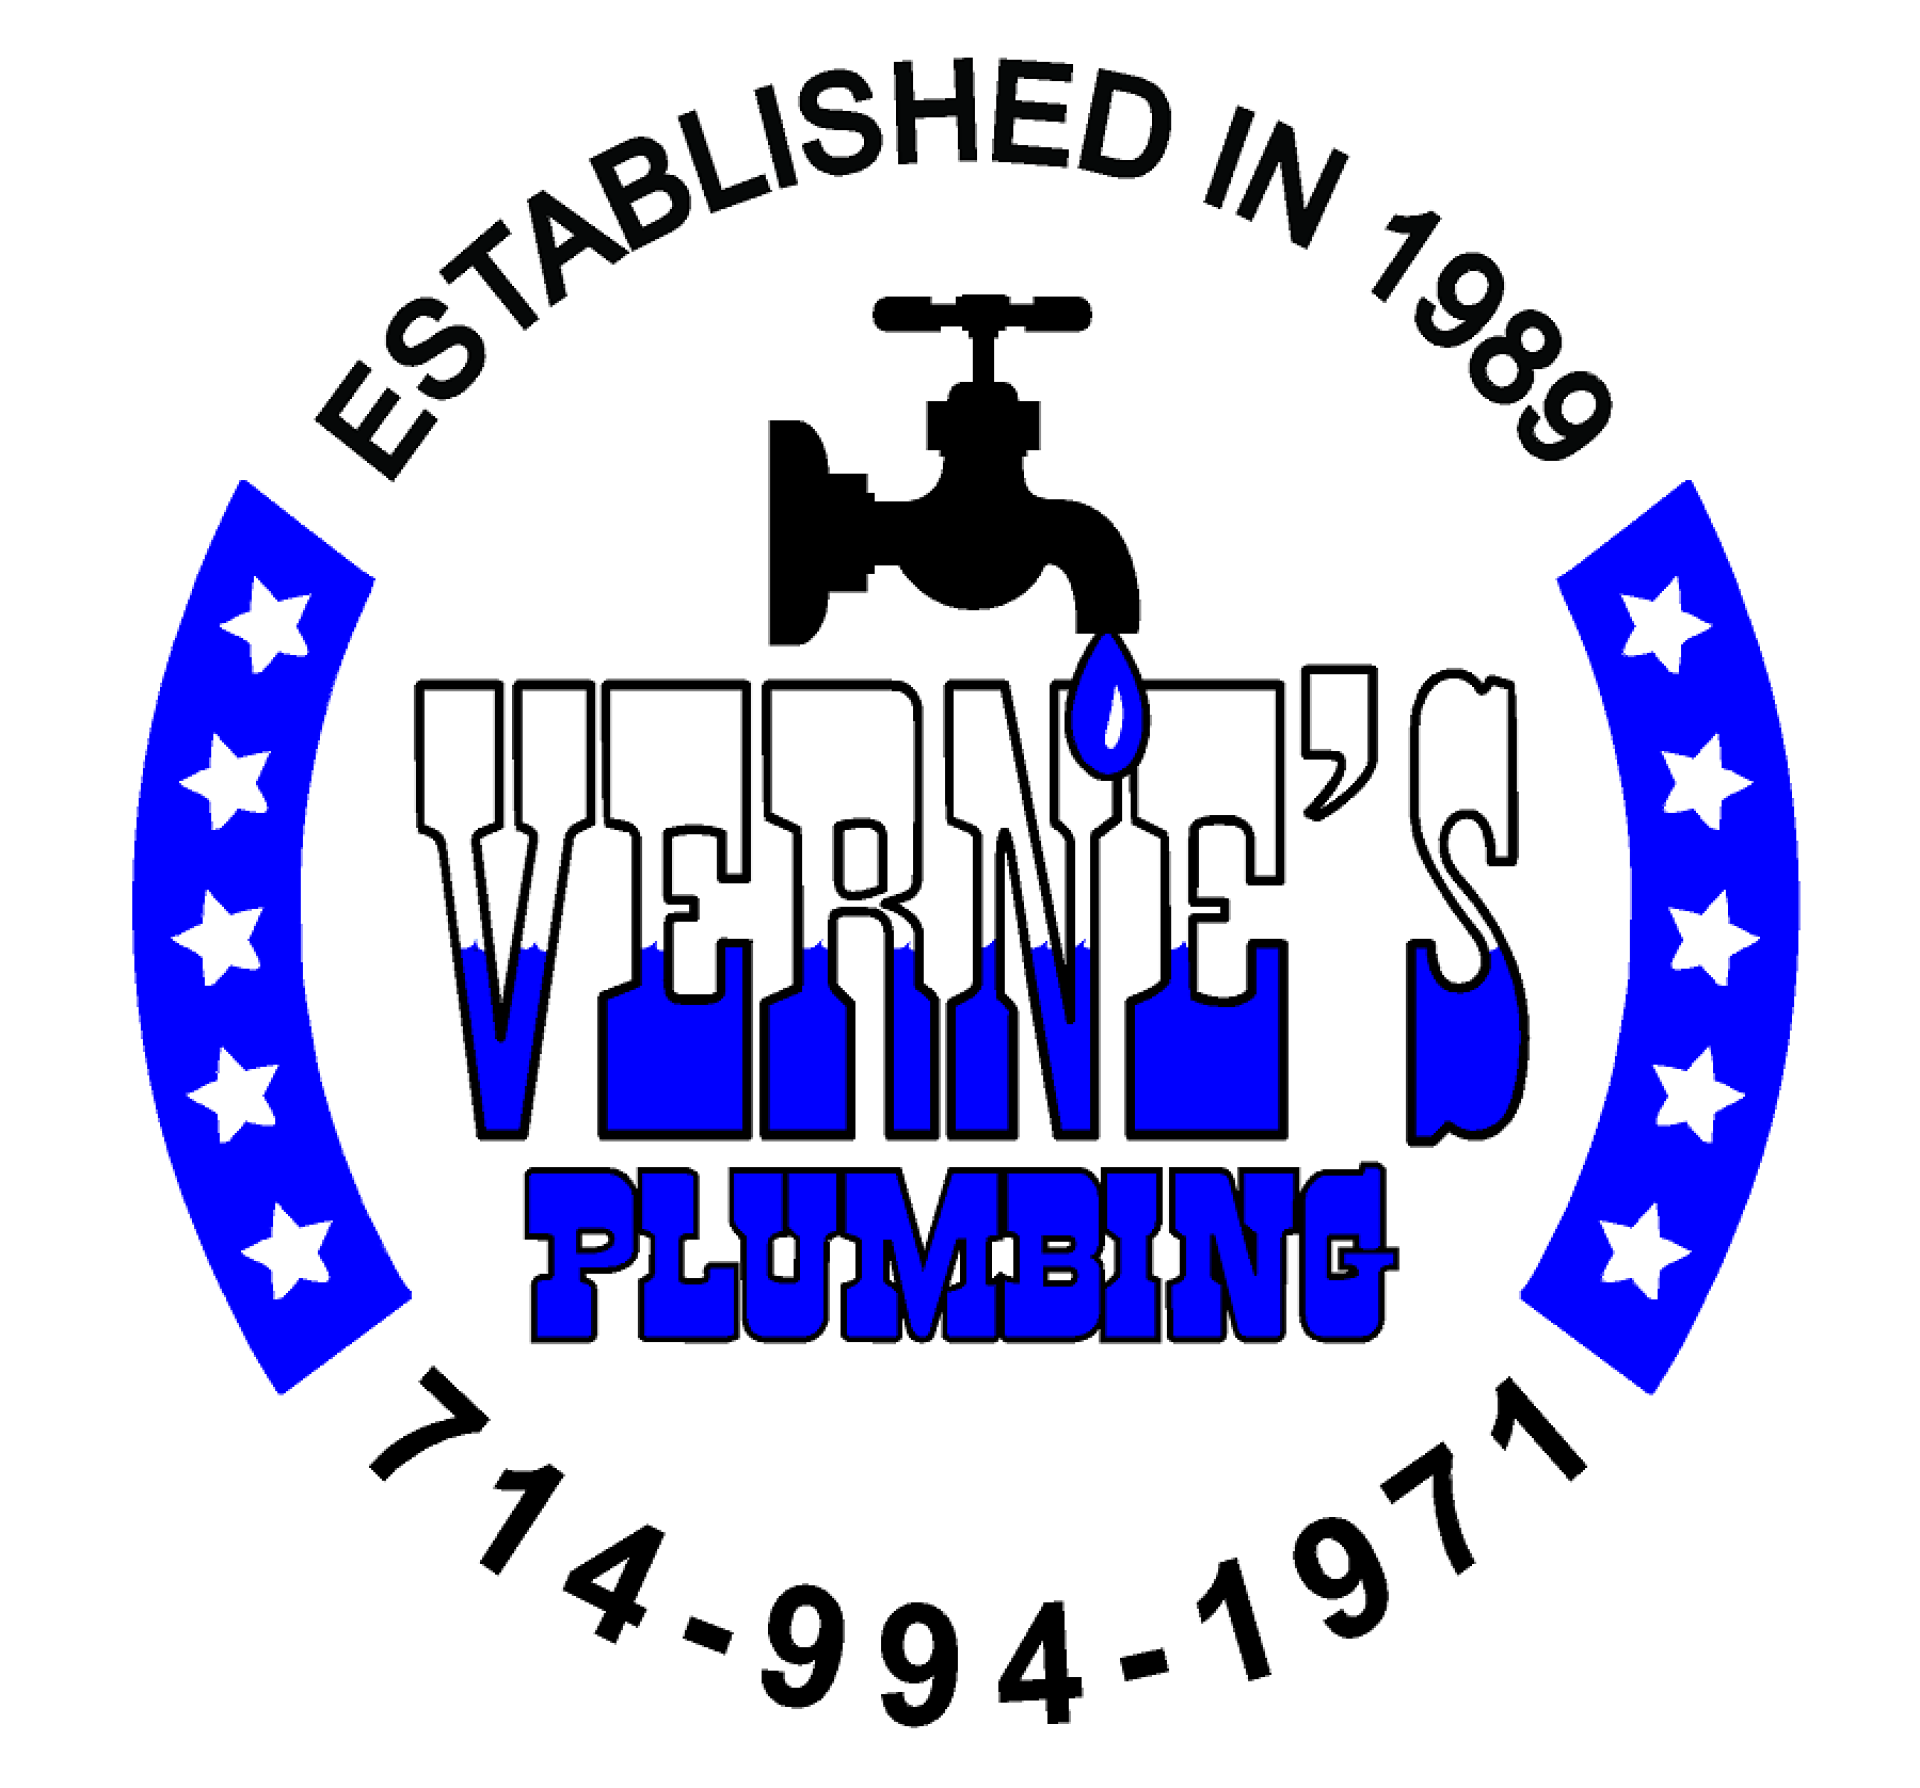 Verne's Plumbing, Inc.